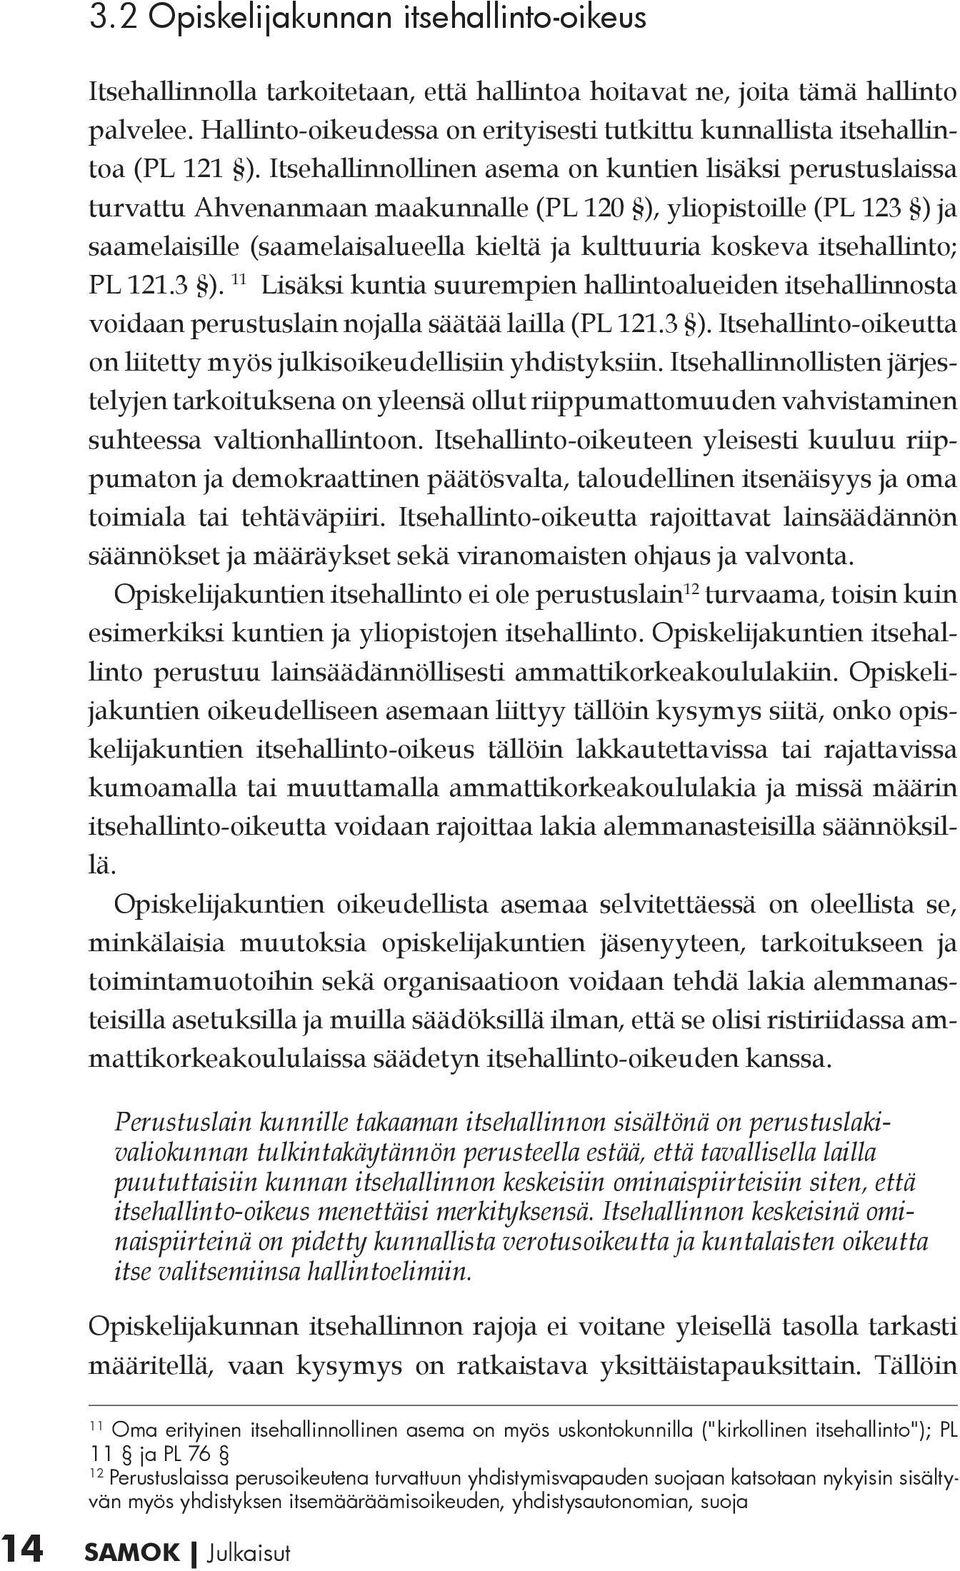 Itsehallinnollinen asema on kuntien lisäksi perustuslaissa turvattu Ahvenanmaan maakunnalle (PL 120 ), yliopistoille (PL 123 ) ja saamelaisille (saamelaisalueella kieltä ja kulttuuria koskeva